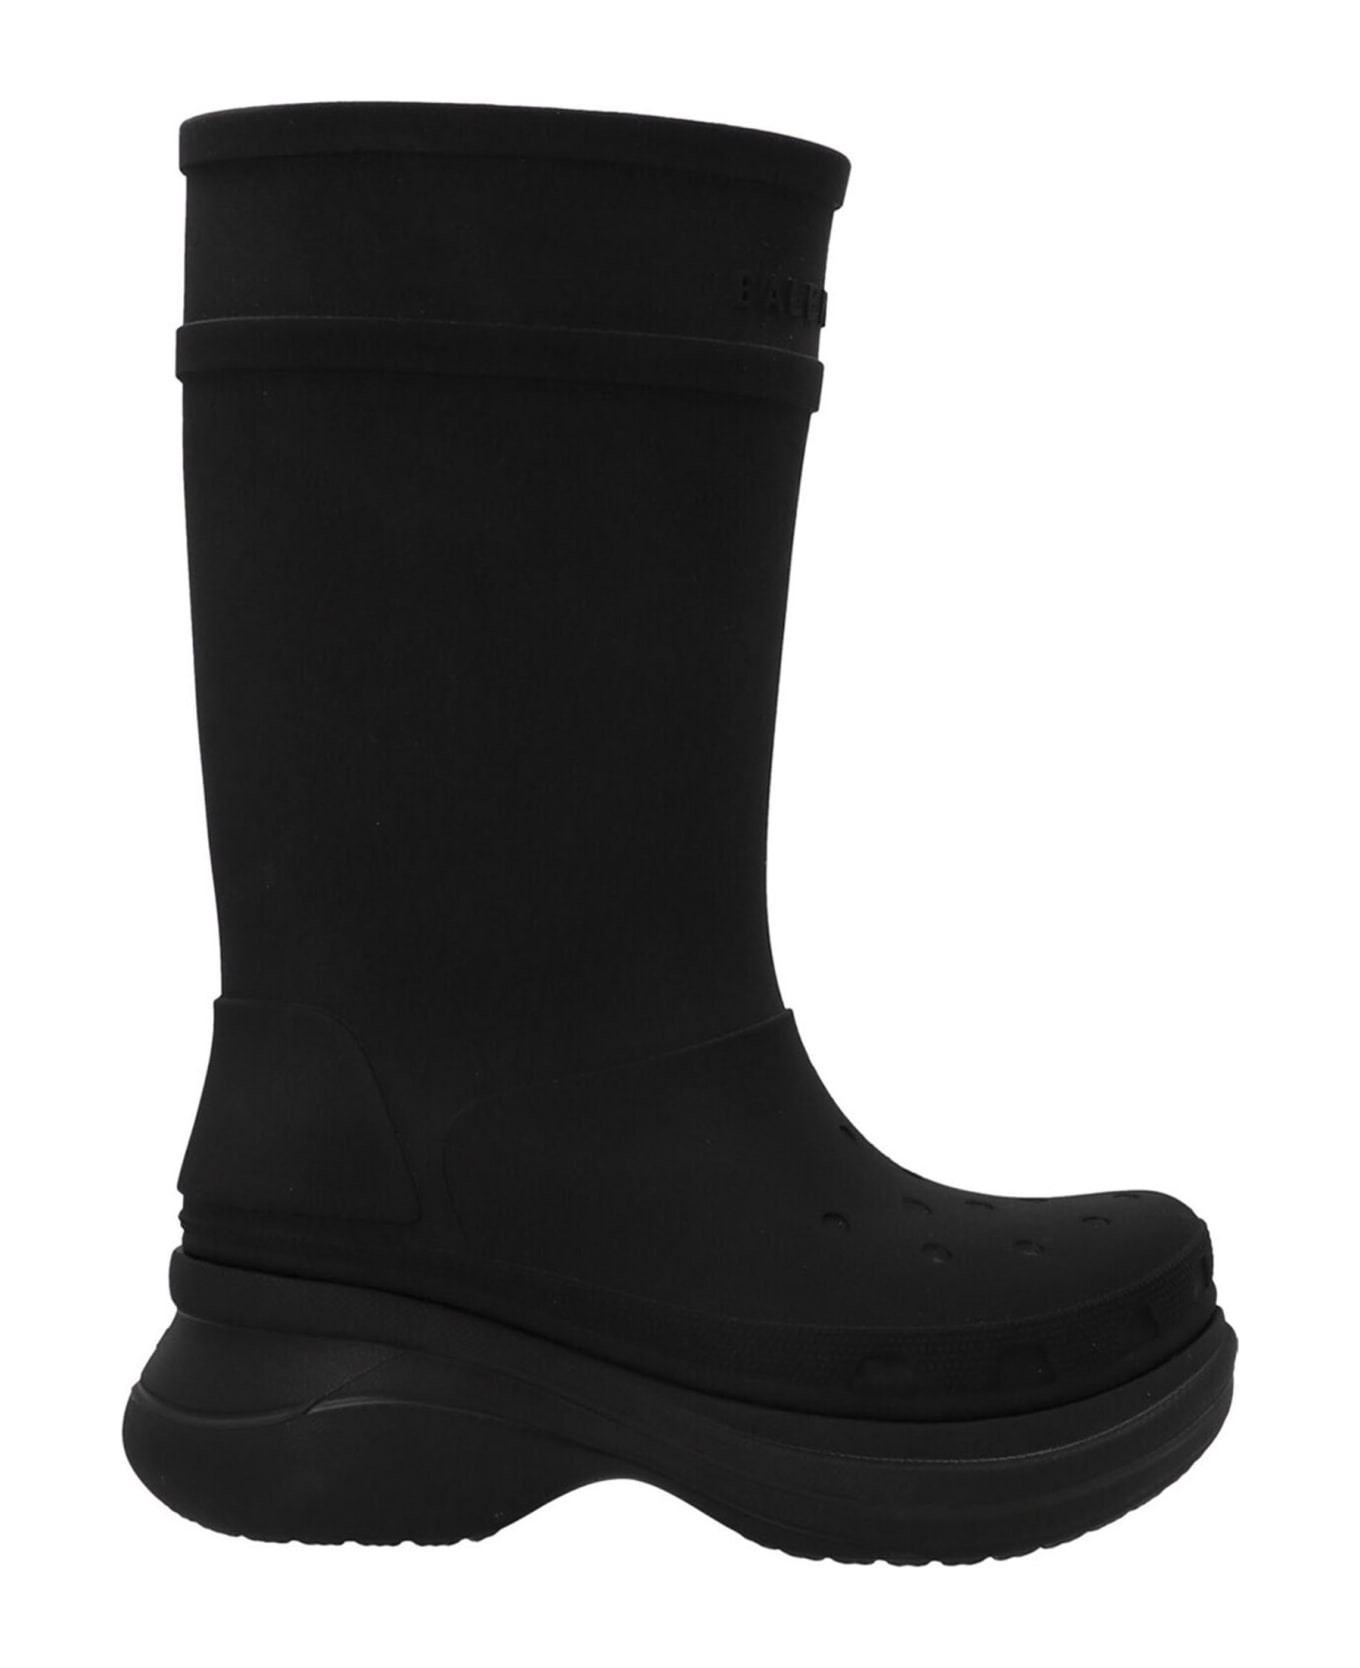 Balenciaga Crocs Boots - Black